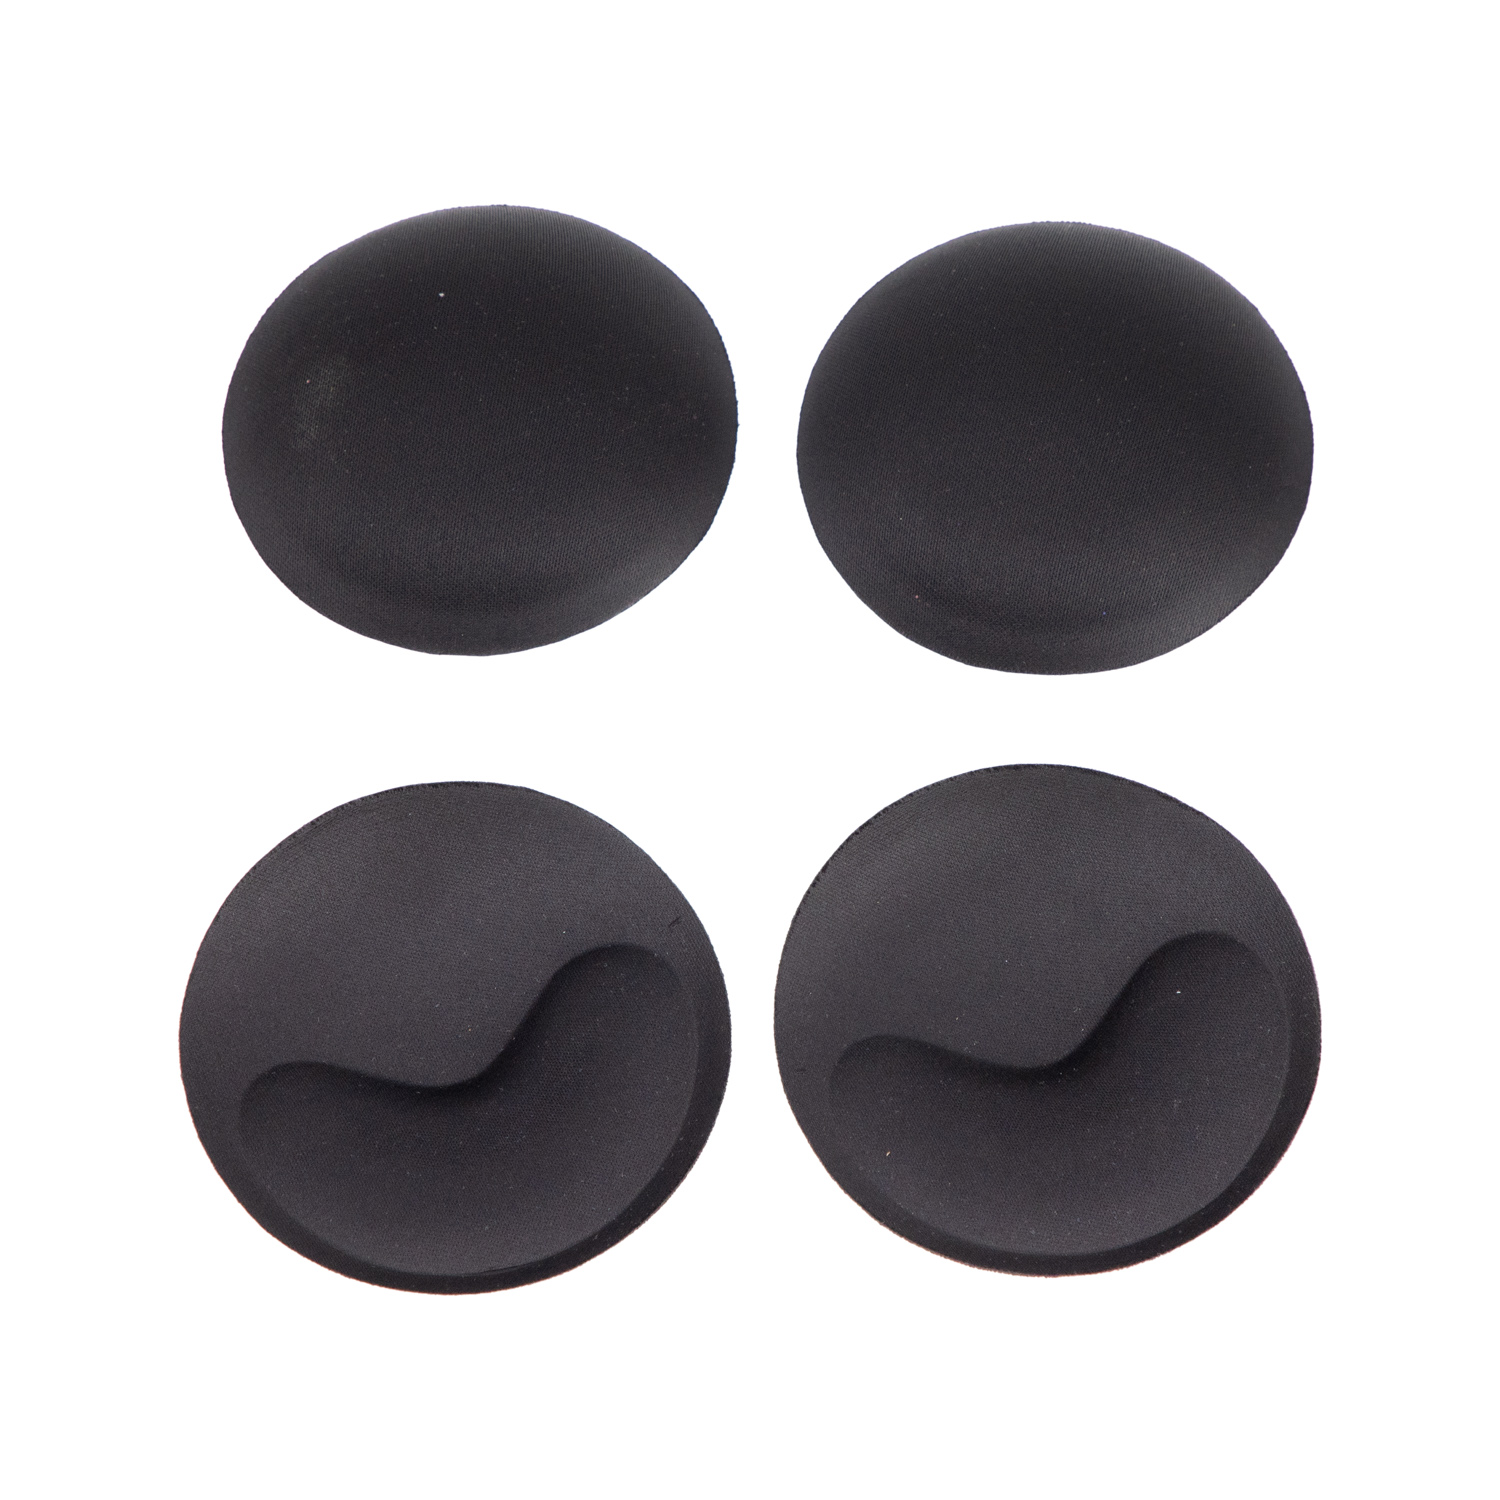 Full Foam Bra Cup water shape black Color for Wovmen Breathable Bra